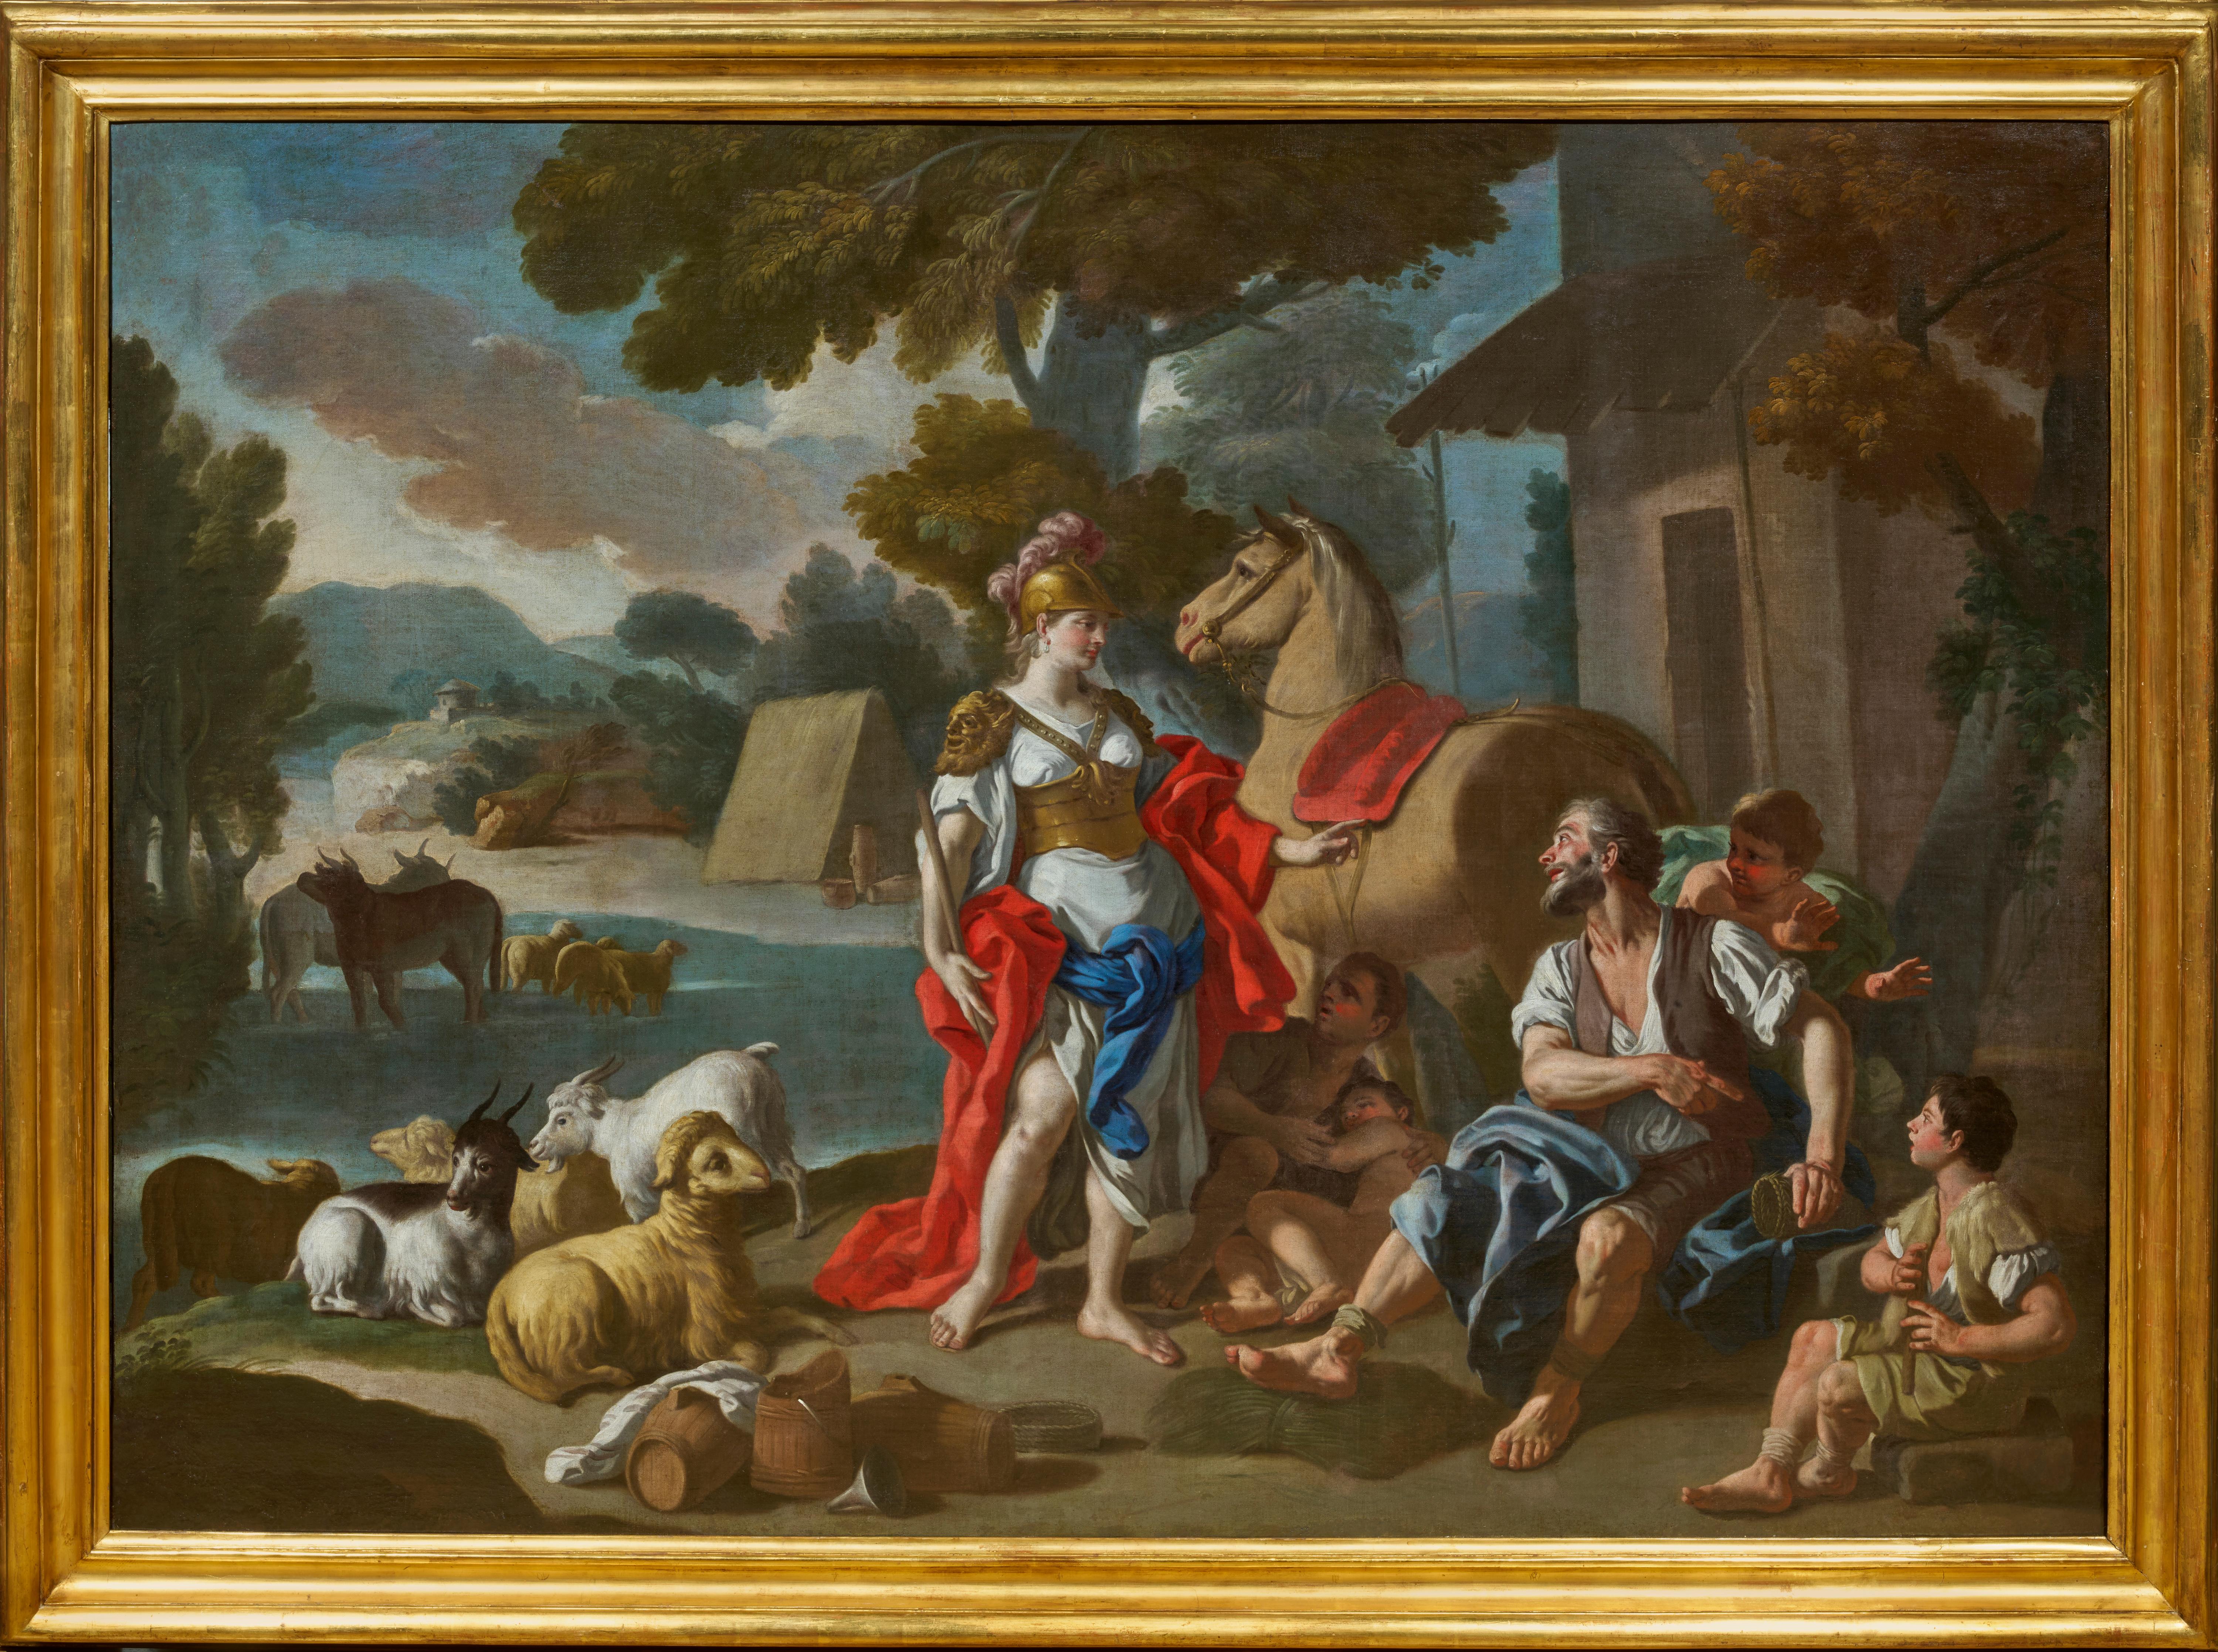 Dans ce tableau magistral, Francesco de MURA présente la rencontre d'Herminia et des bergers, un épisode célèbre tiré du septième chant de La Jérusalem délivrée de Torquato Tasso. L'artiste nous offre une synthèse des séductions chromatiques des